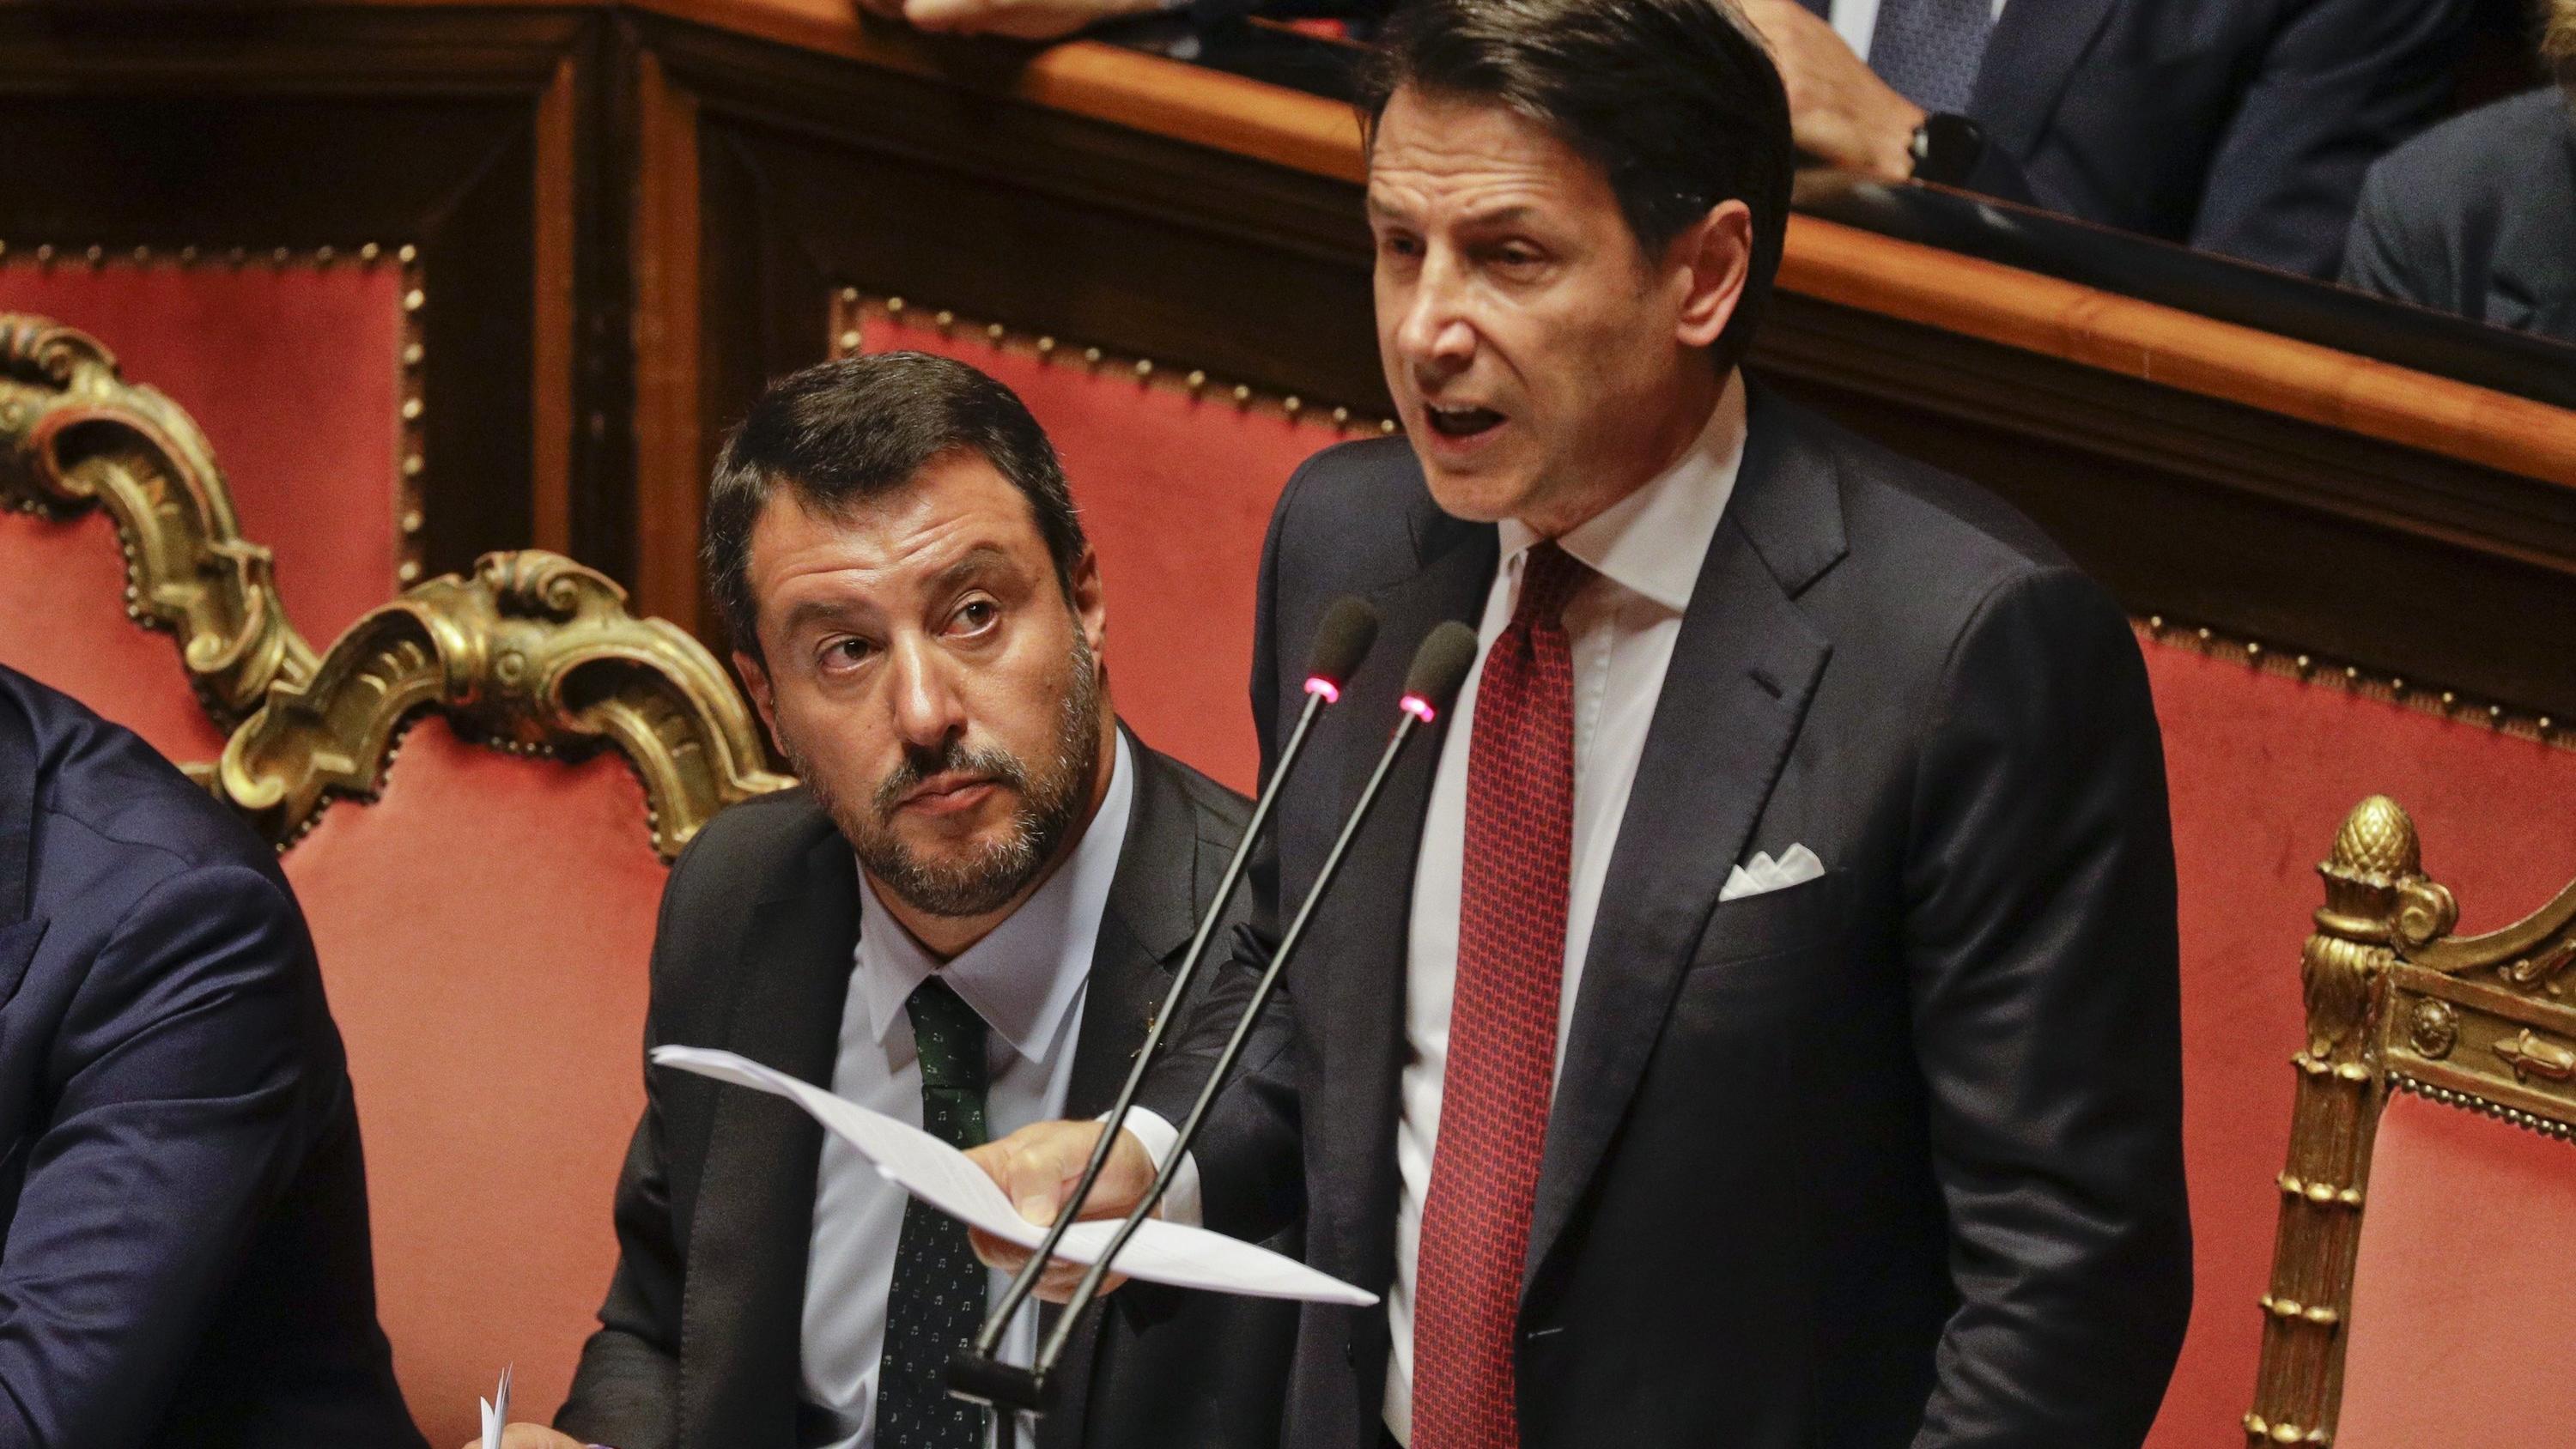 20.08.2019, Italien, Rom: Giuseppe Conte (r), Ministerpräsident von Italien, hält eine Rede in der Abgeordnetenkammer. Neben ihm sitzt der stellvertretende Ministerpräsident von Italien und Mitglied der Lega, Matteo Salvini.